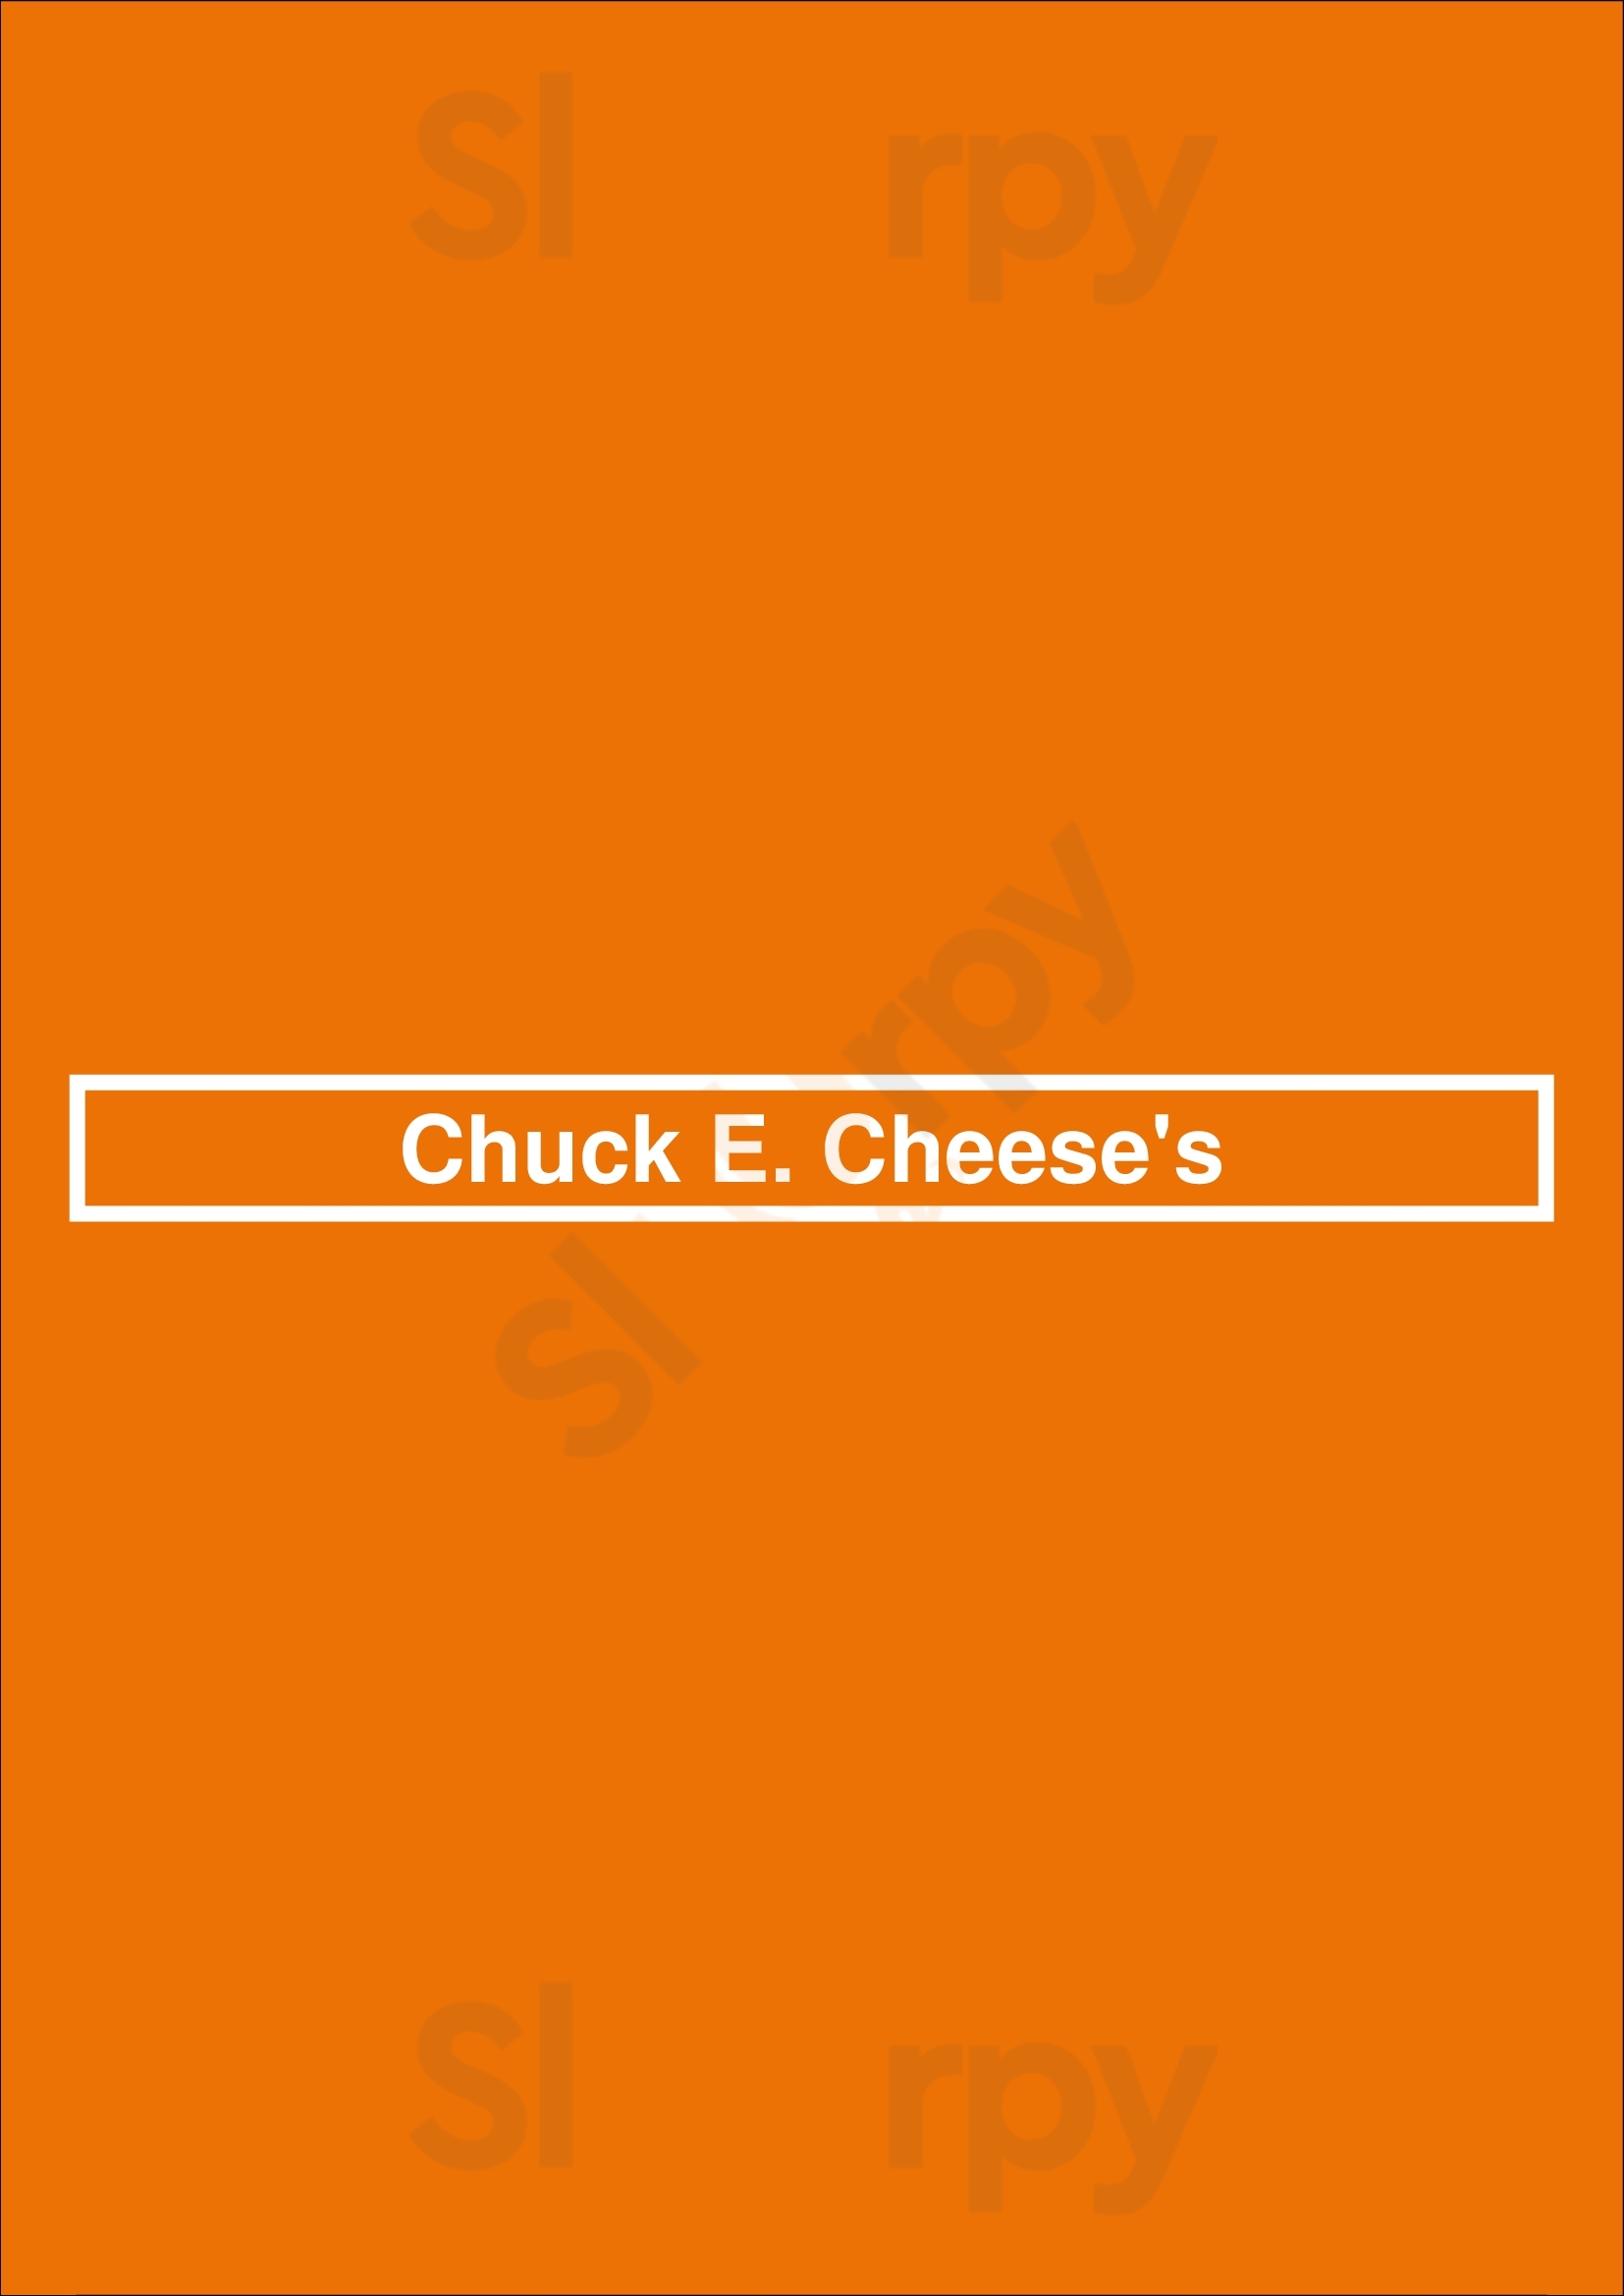 Chuck E. Cheese Orlando Menu - 1